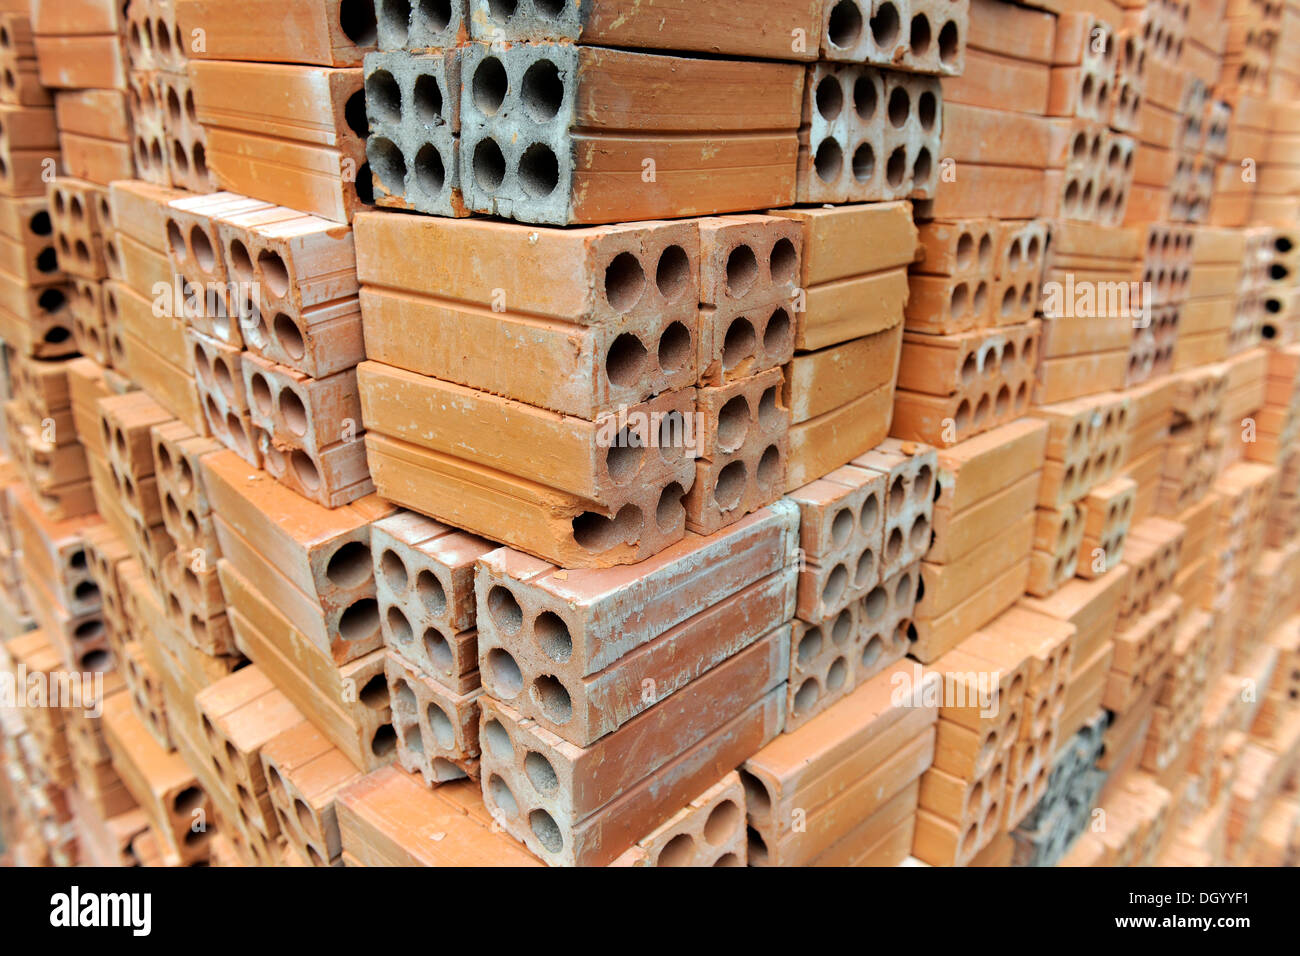 Stapled bricks Stock Photo